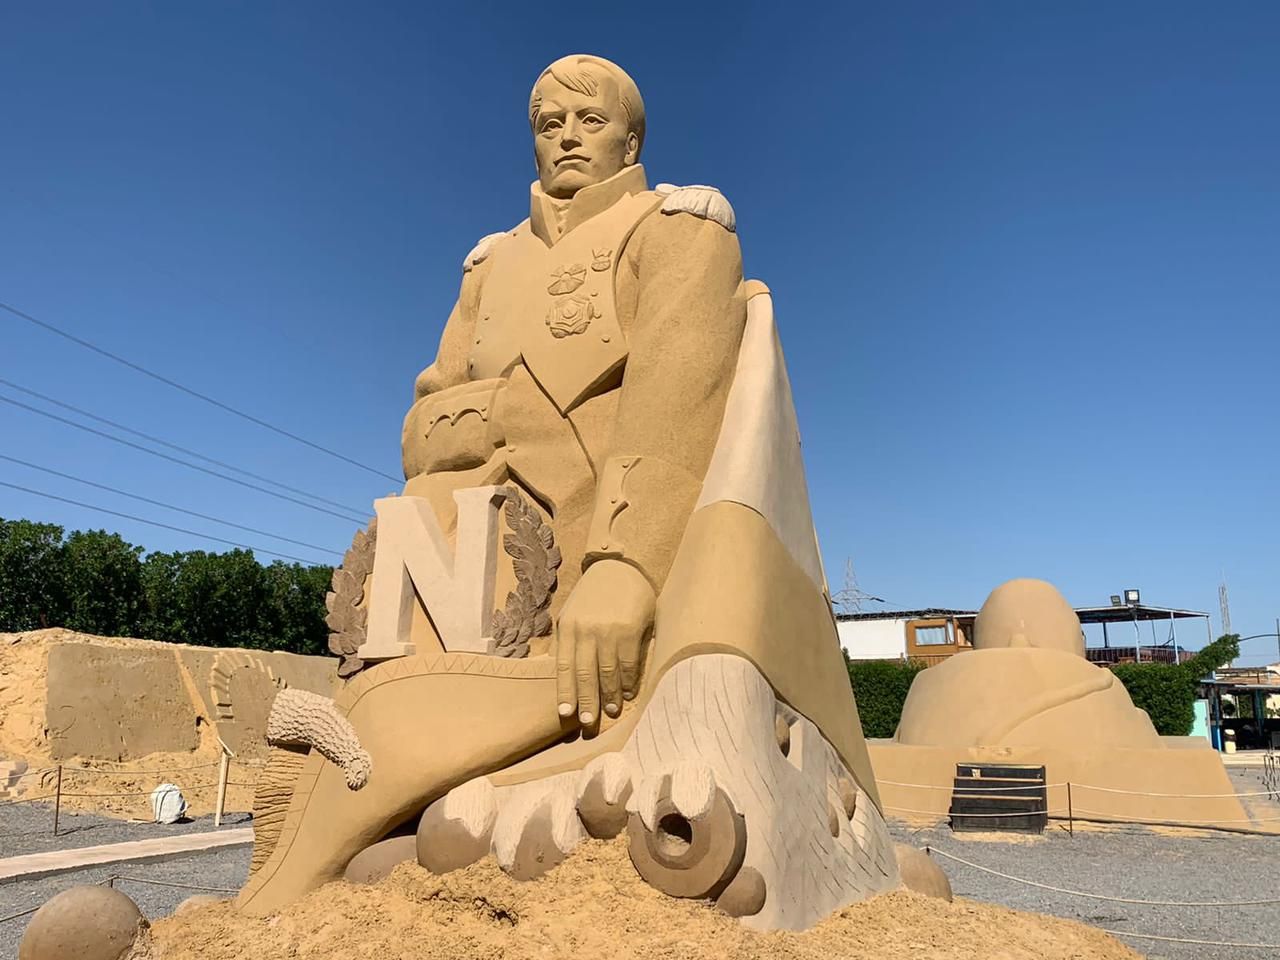 تمثال هتلر من الرمال بمتخف الغردقة